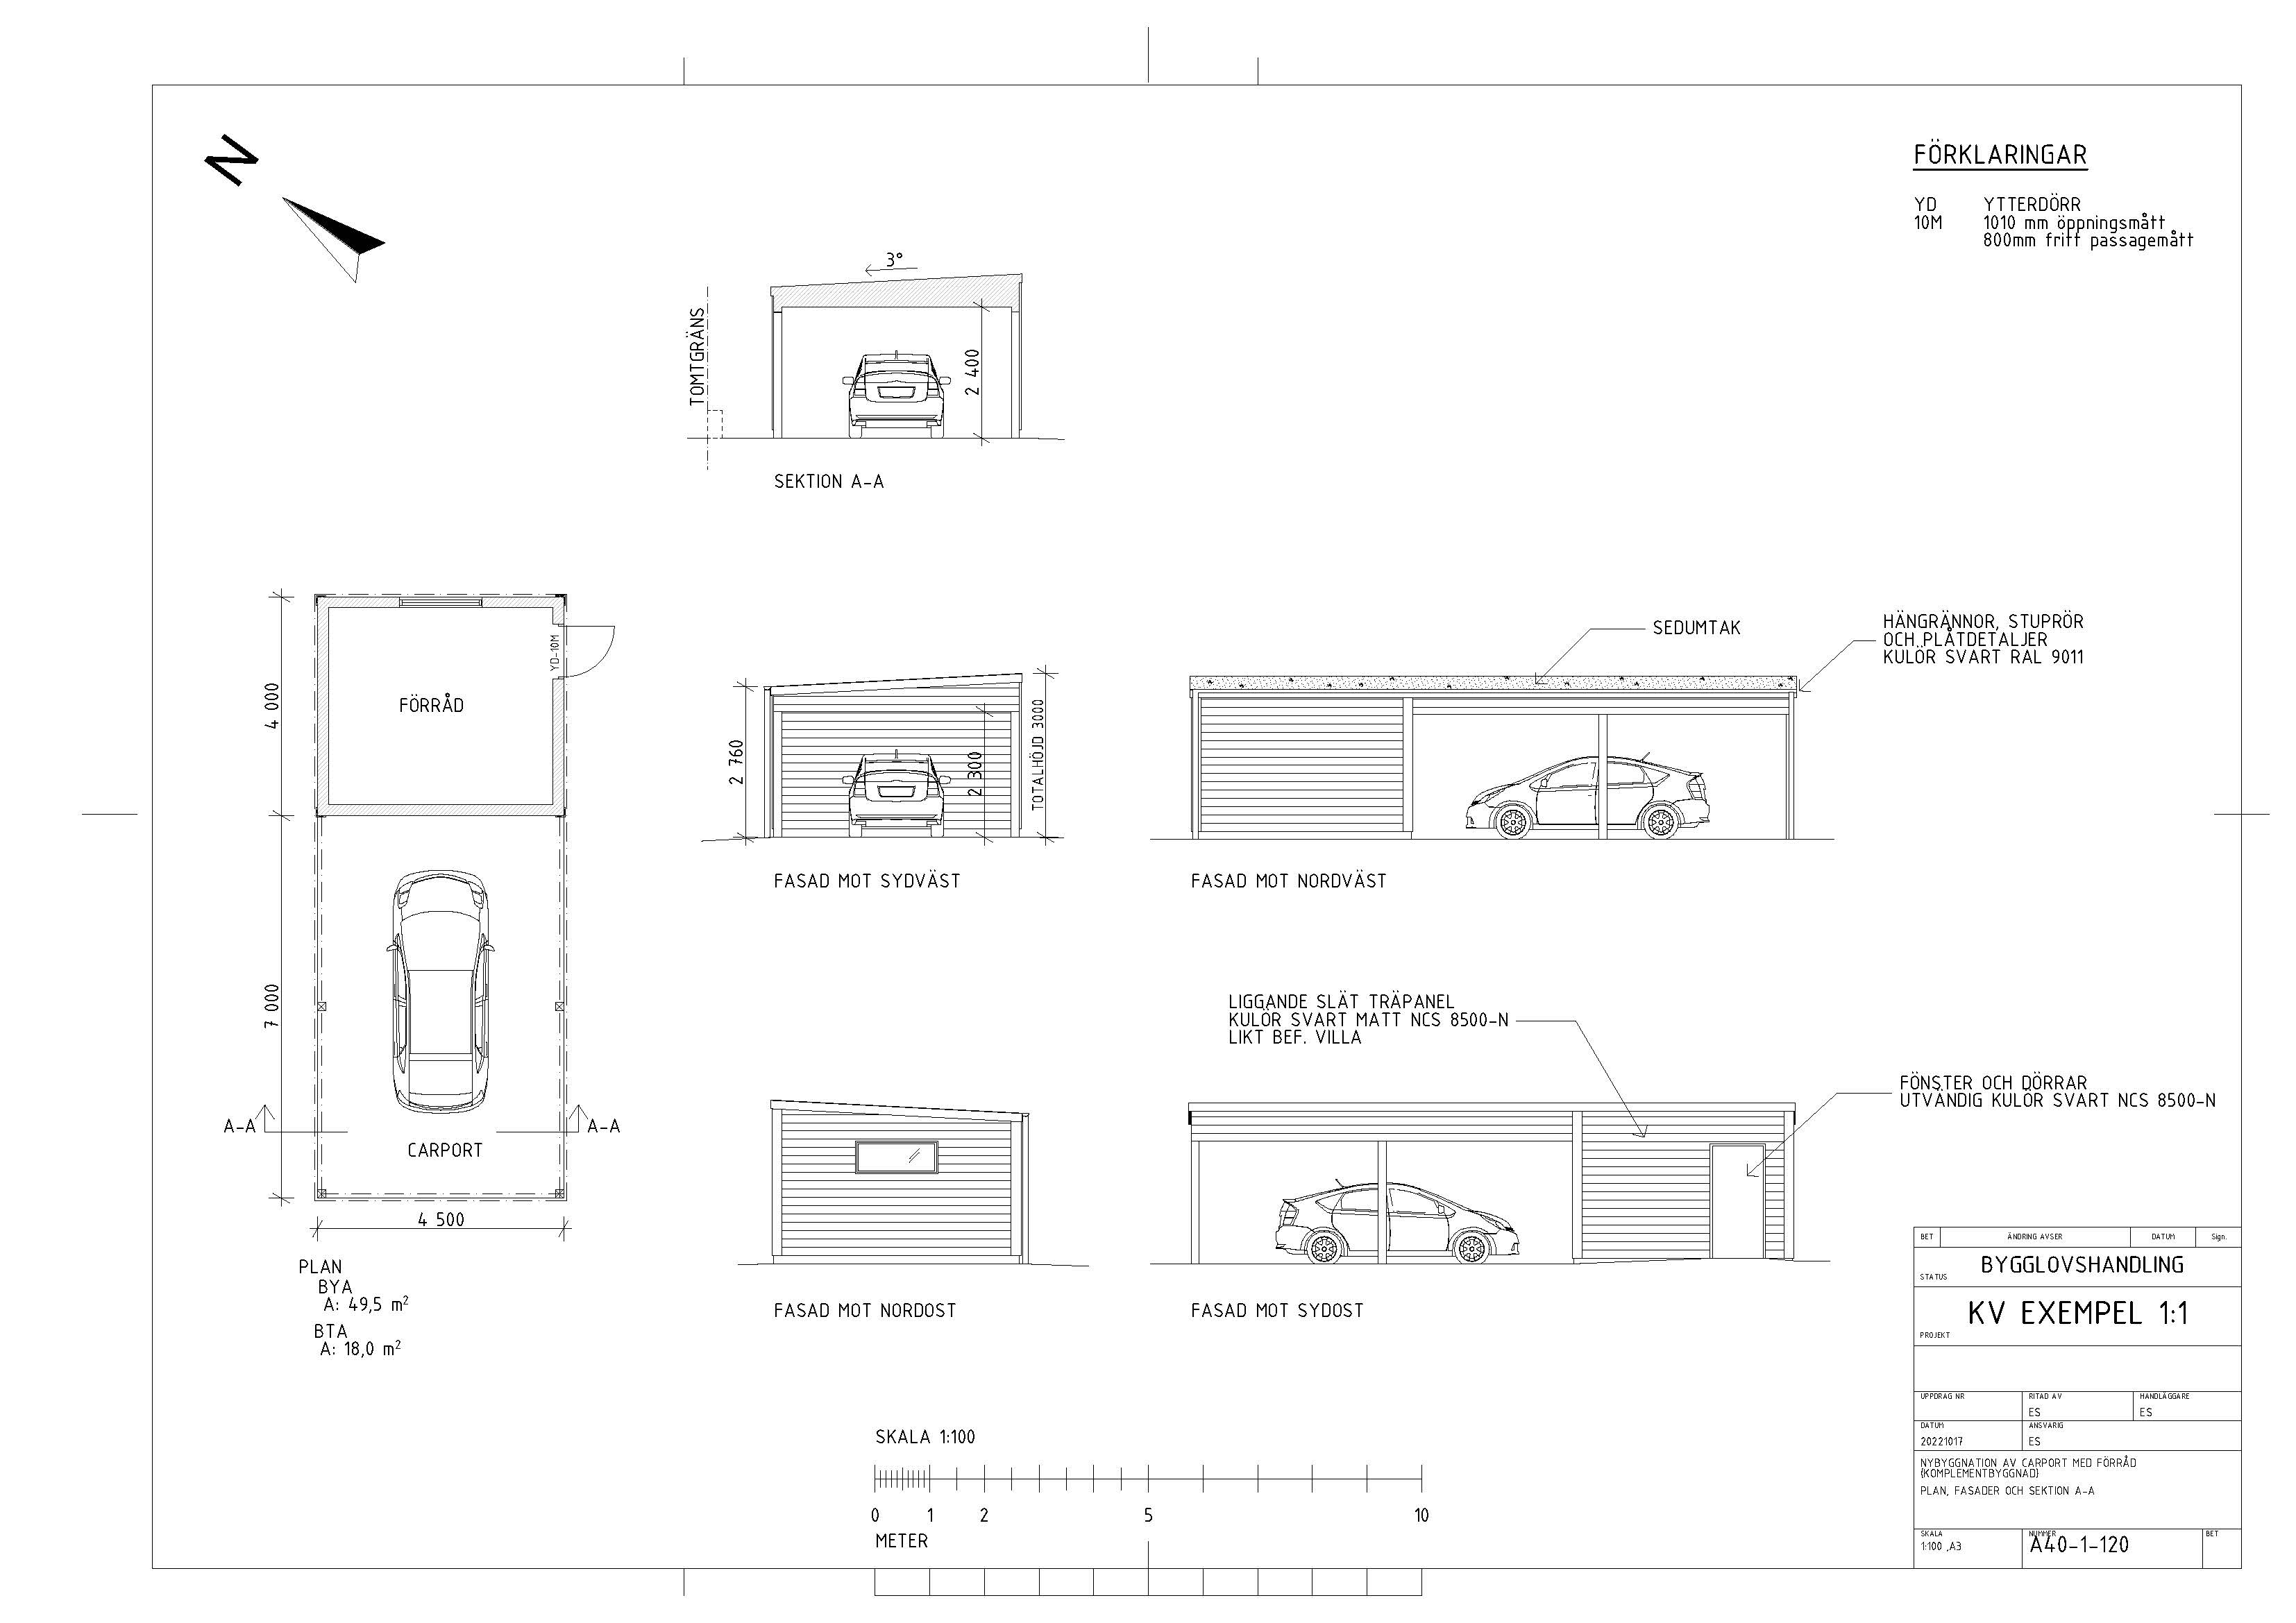 Plan fasad sektion carport förråd Typritning_A-40-1-120.jpg